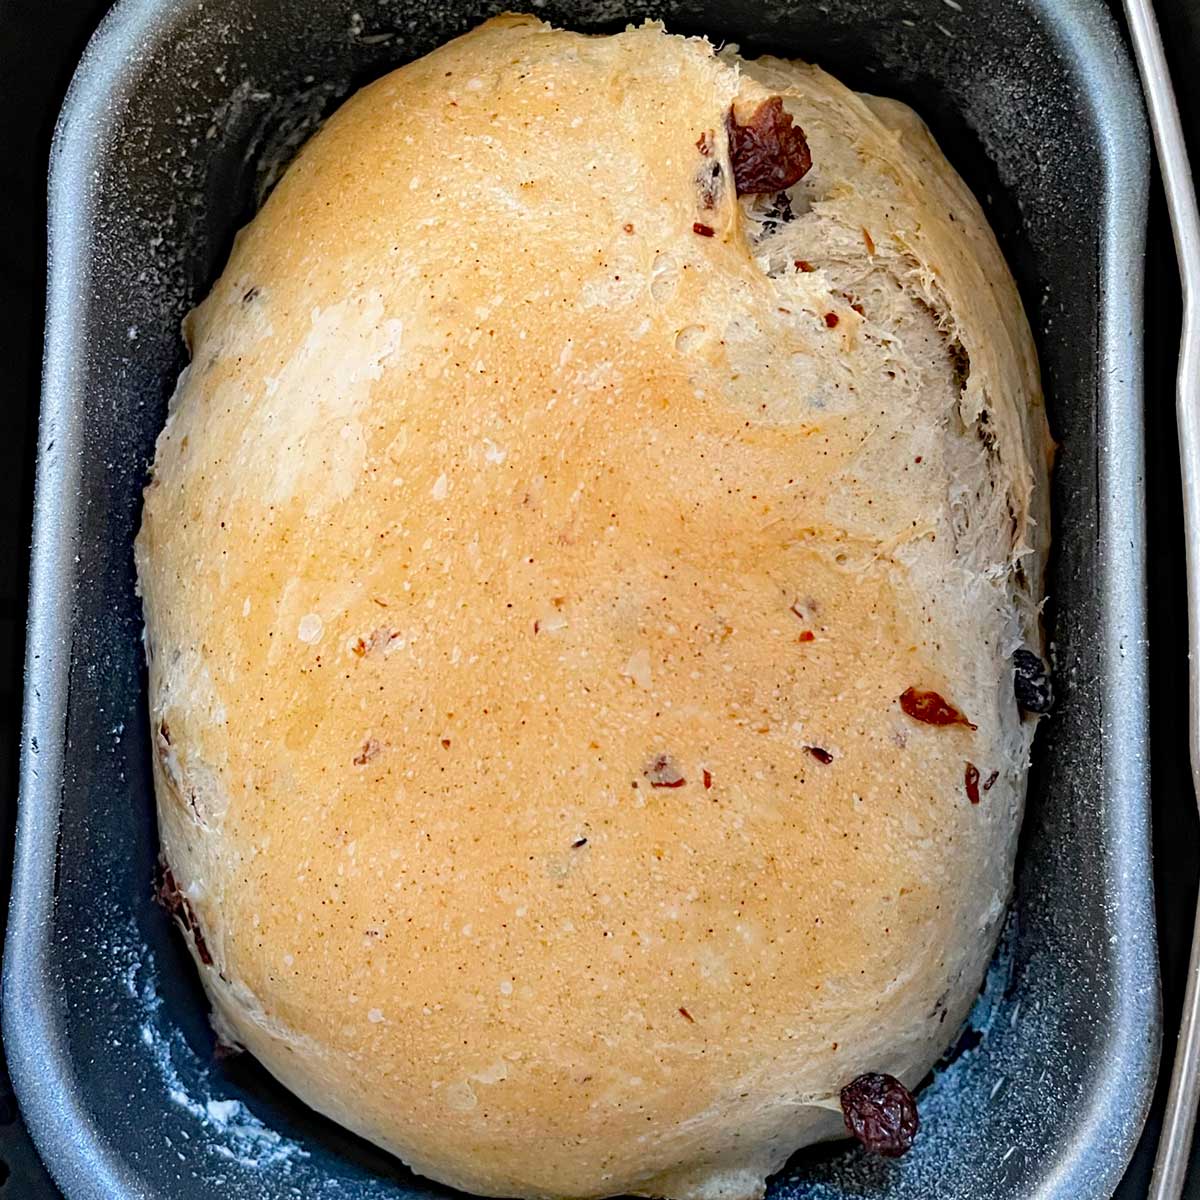 Baked Cinnamon raisin bread in pan.